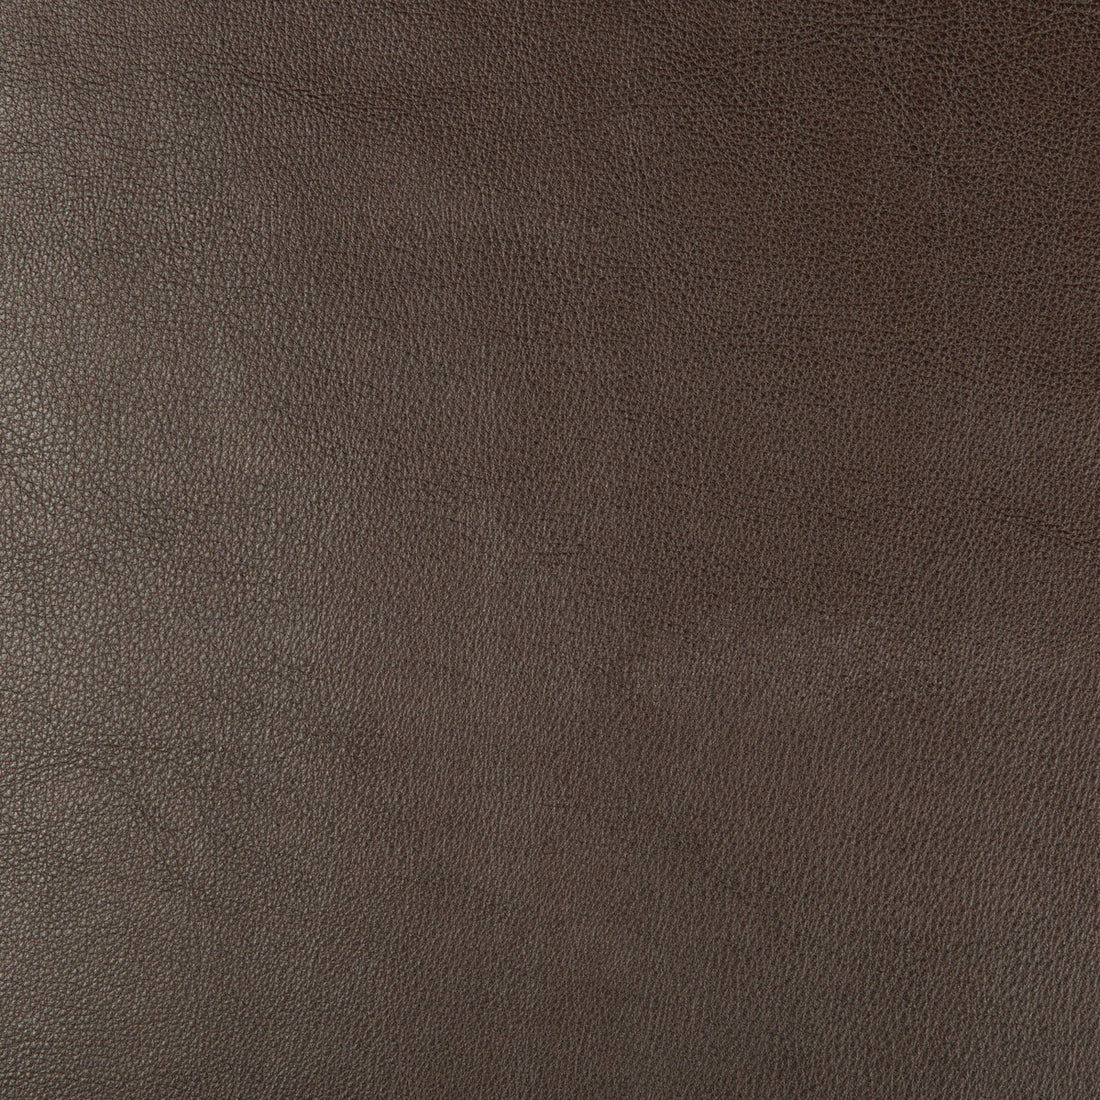 Kravet Design fabric in dust-66 color - pattern DUST.66.0 - by Kravet Design